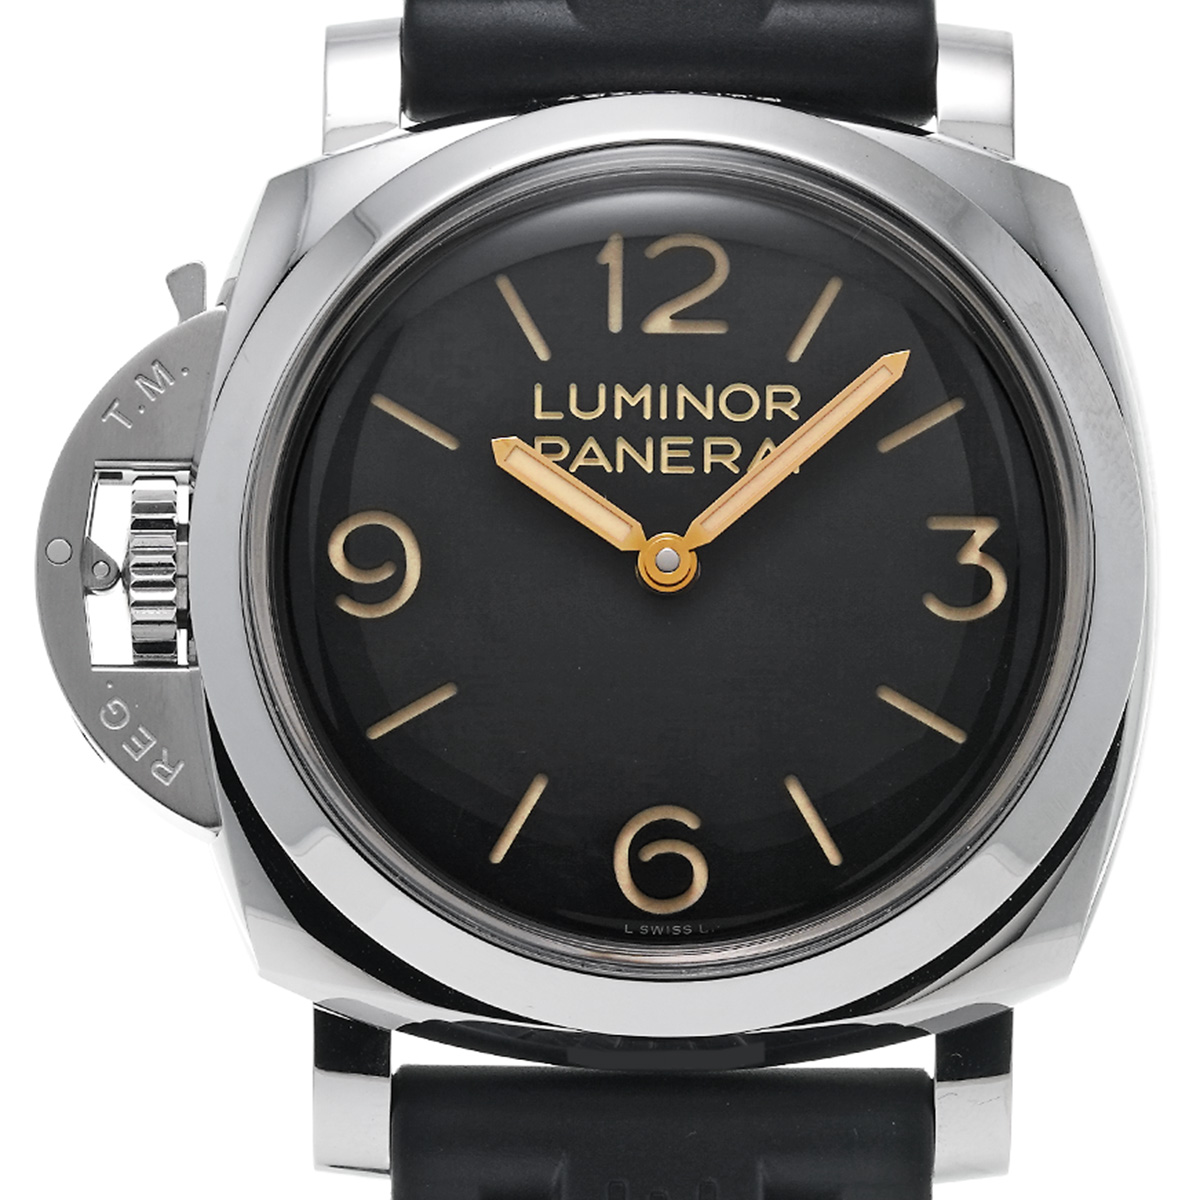 パネライ PANERAI PAM00557 R番(2015年製造) ブラック メンズ 腕時計